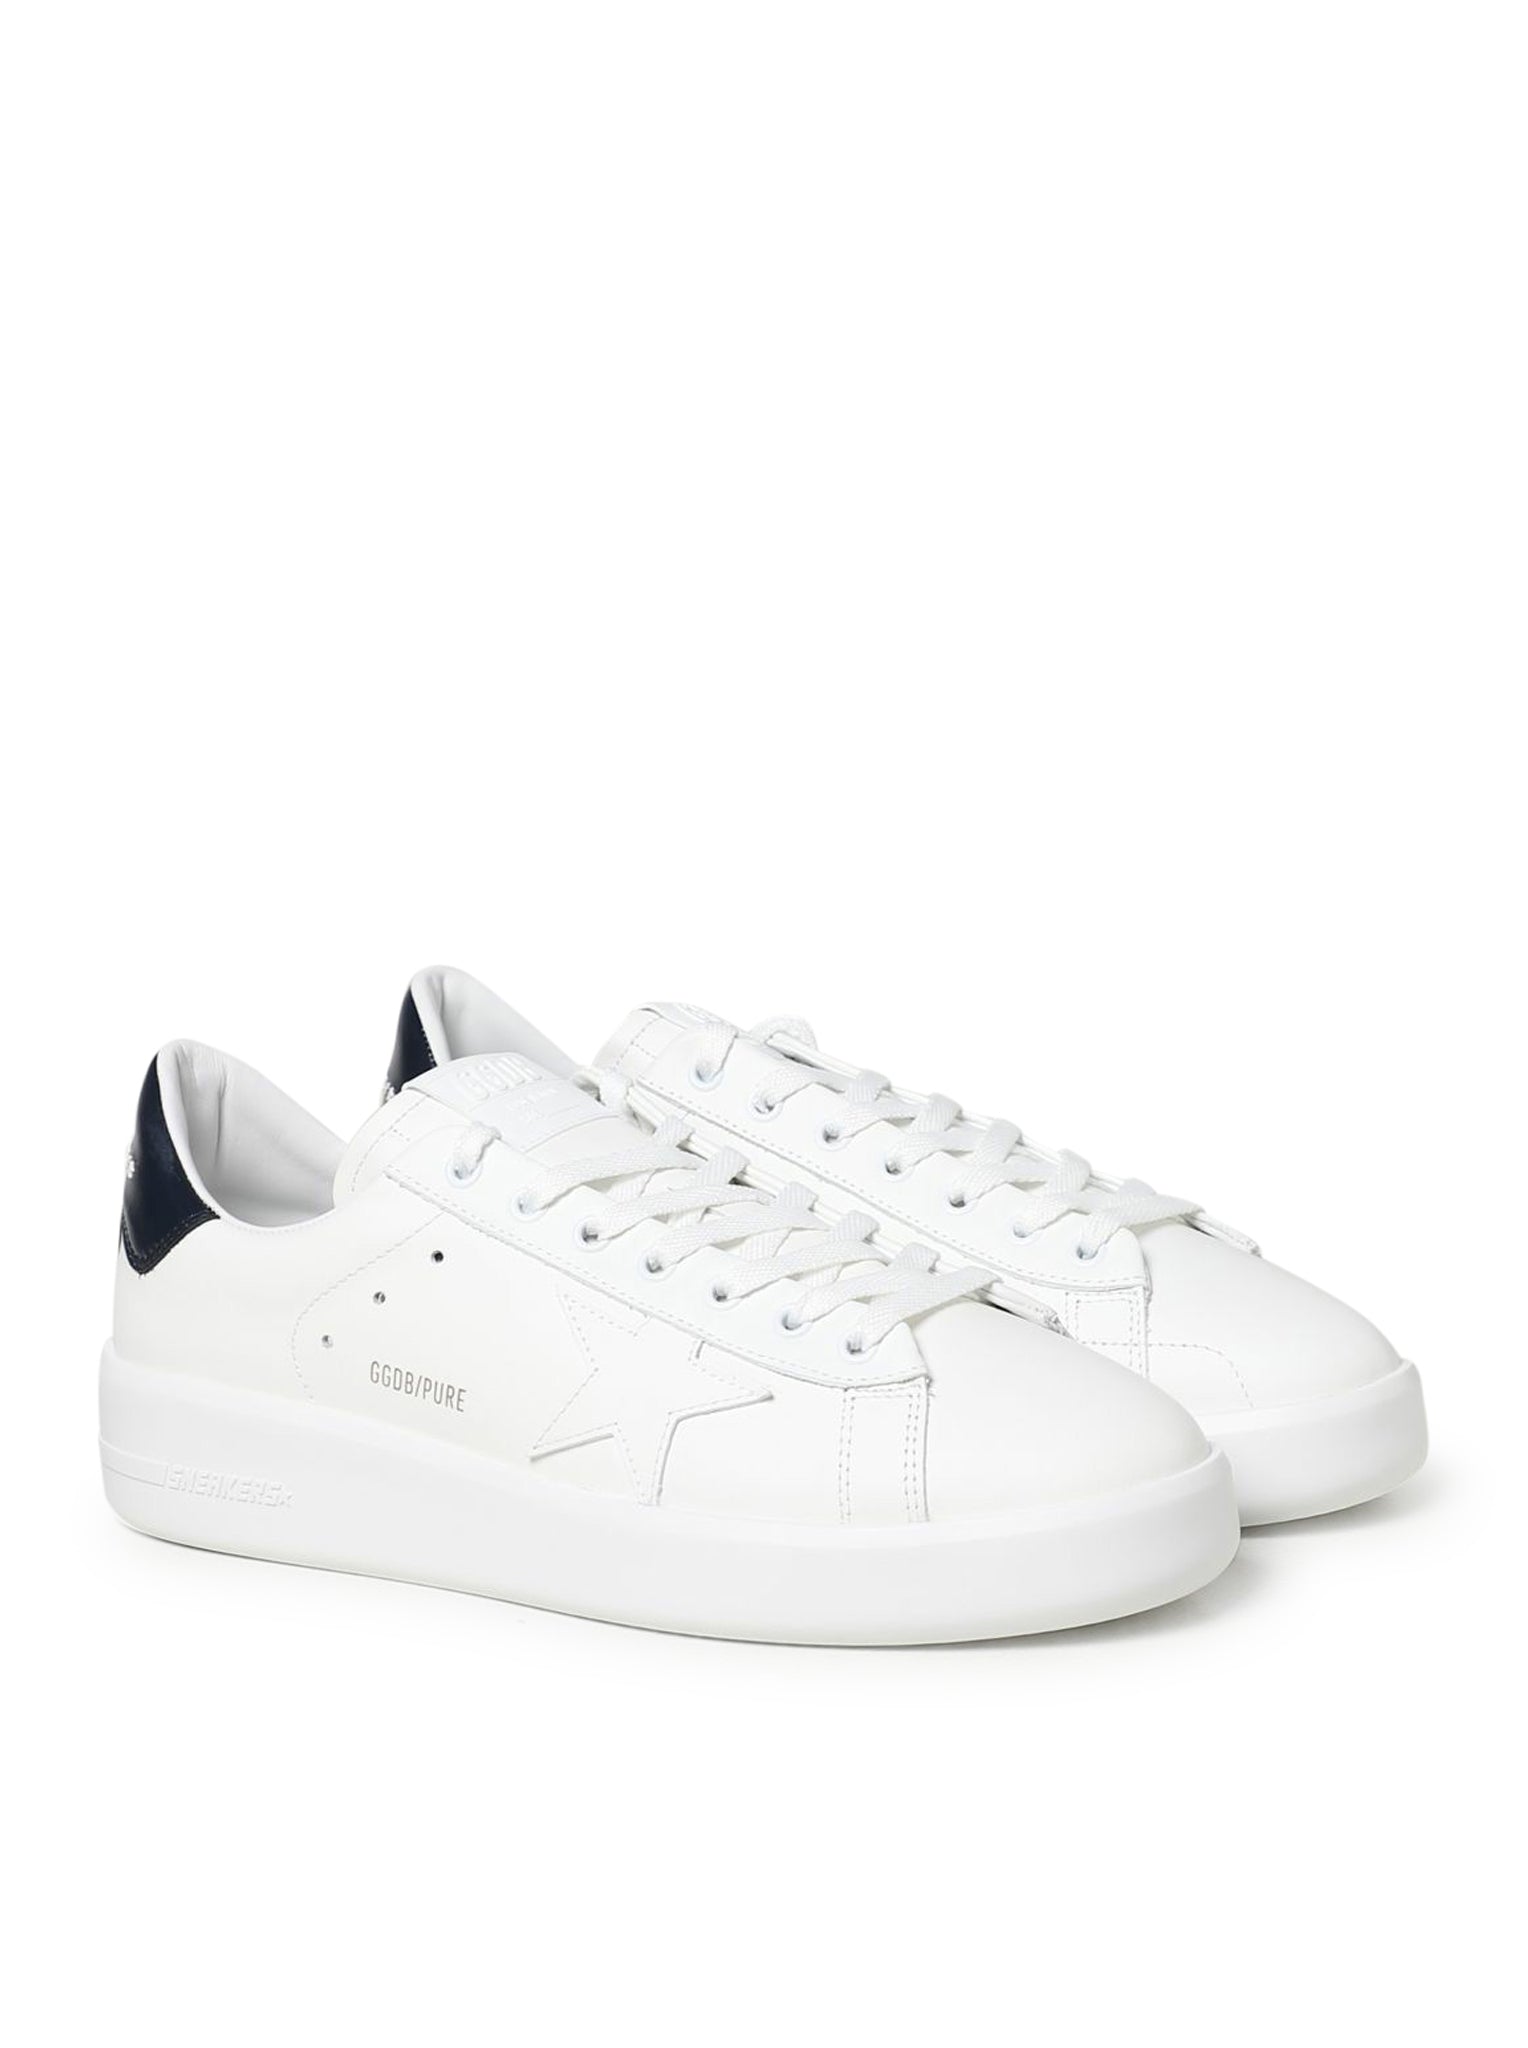 Sneaker Purestar in pelle bianca